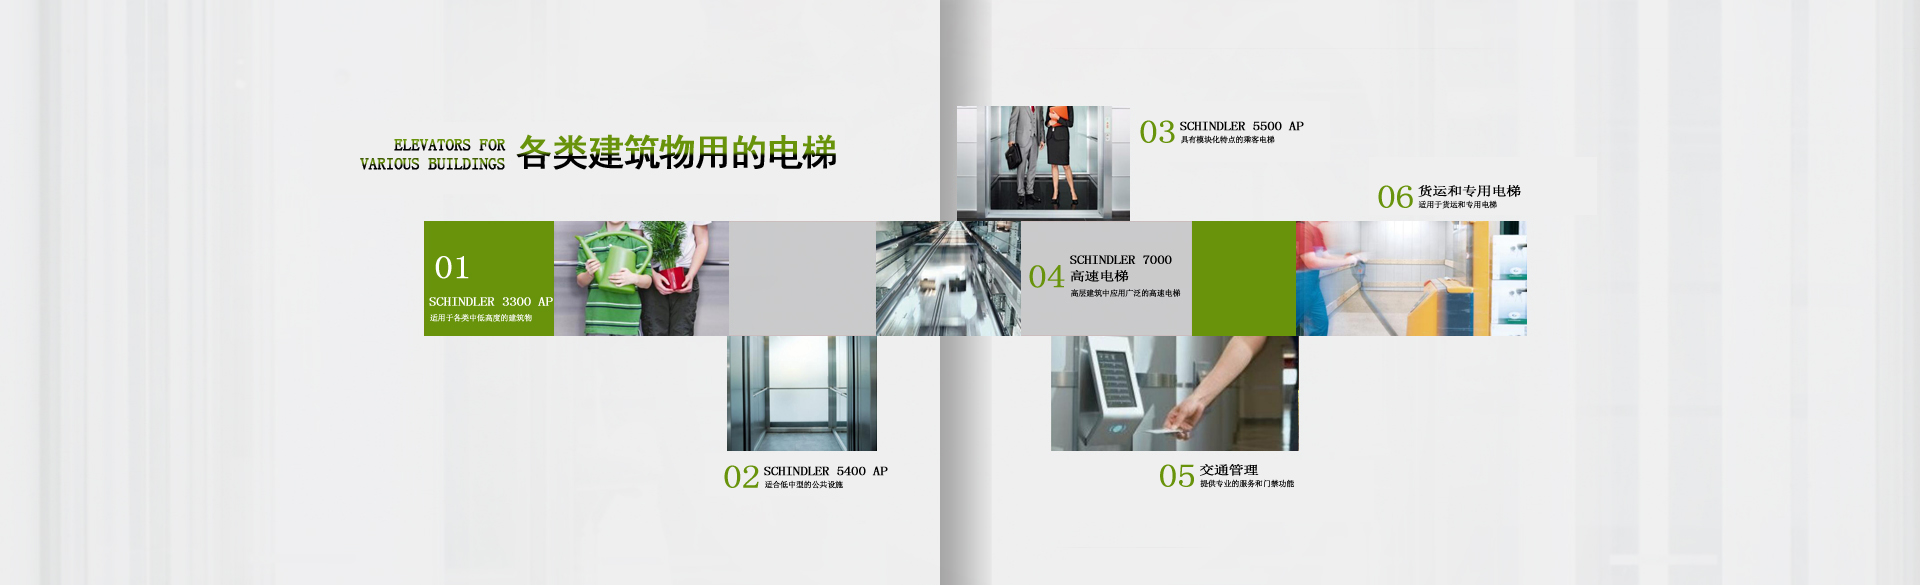 重庆净水,重庆新风系统,重庆电梯就选重庆恩卓暖通工程有限公司